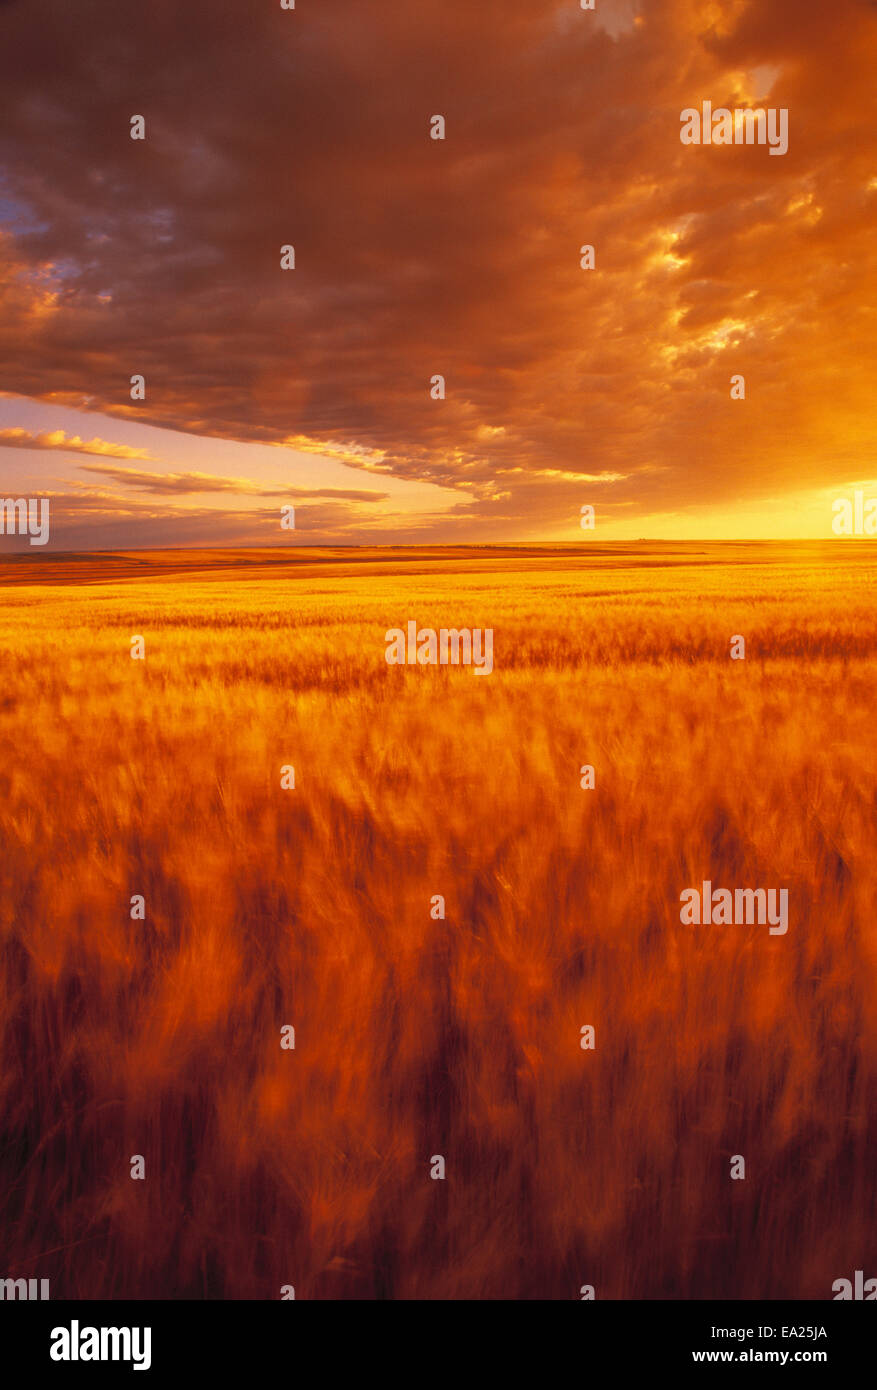 Landwirtschaft - ein weites Feld an Reife Hartweizen wehen im Wind, bei Sonnenuntergang, mit bunten Wolken / Manitoba, Kanada. Stockfoto